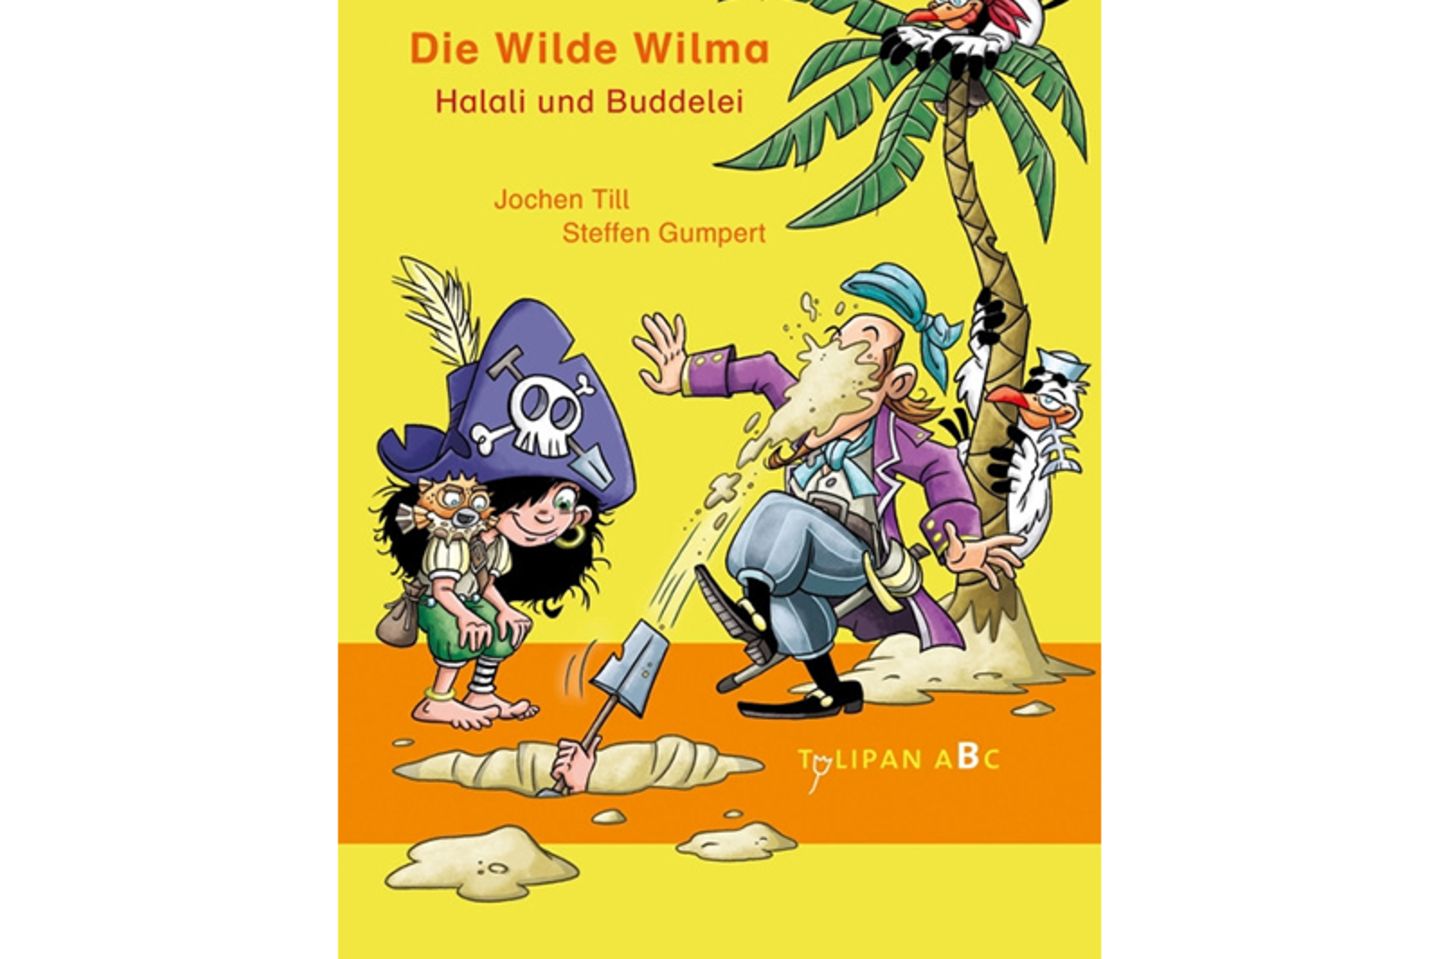 Die Wilde Wilma – Halali und Buddelei